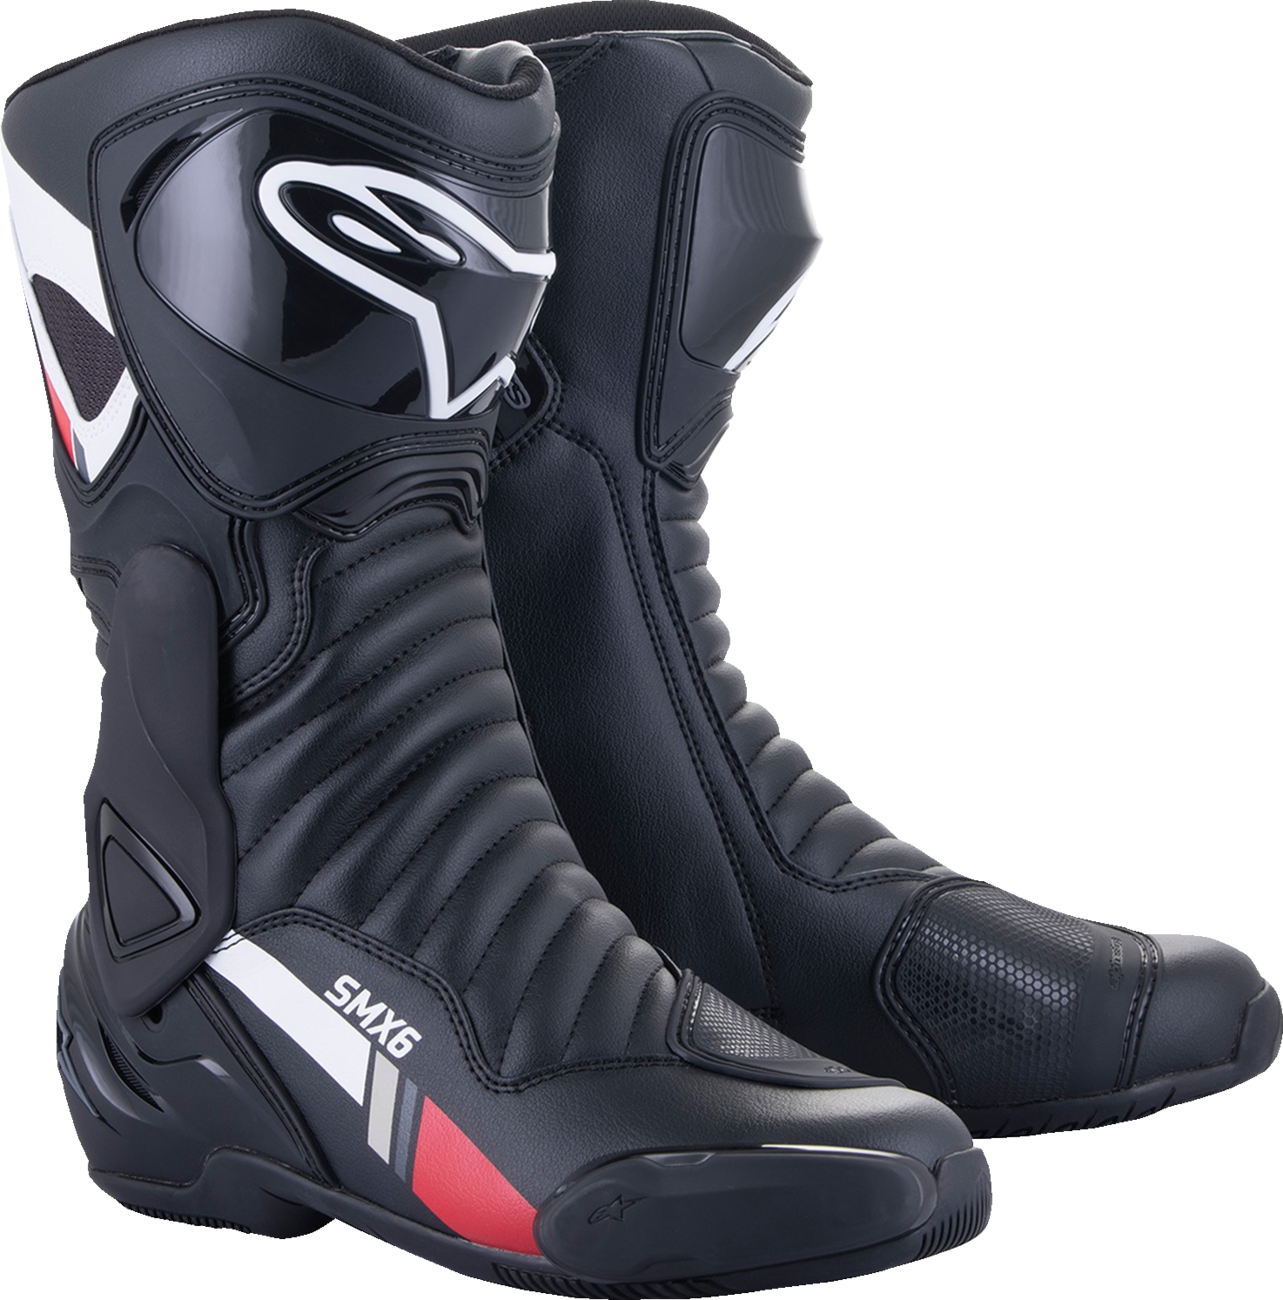 ALPINESTARS SMX-6 v2 Boots - Black/White/Gray - US 11.5 / EU 46 2223017-153-46